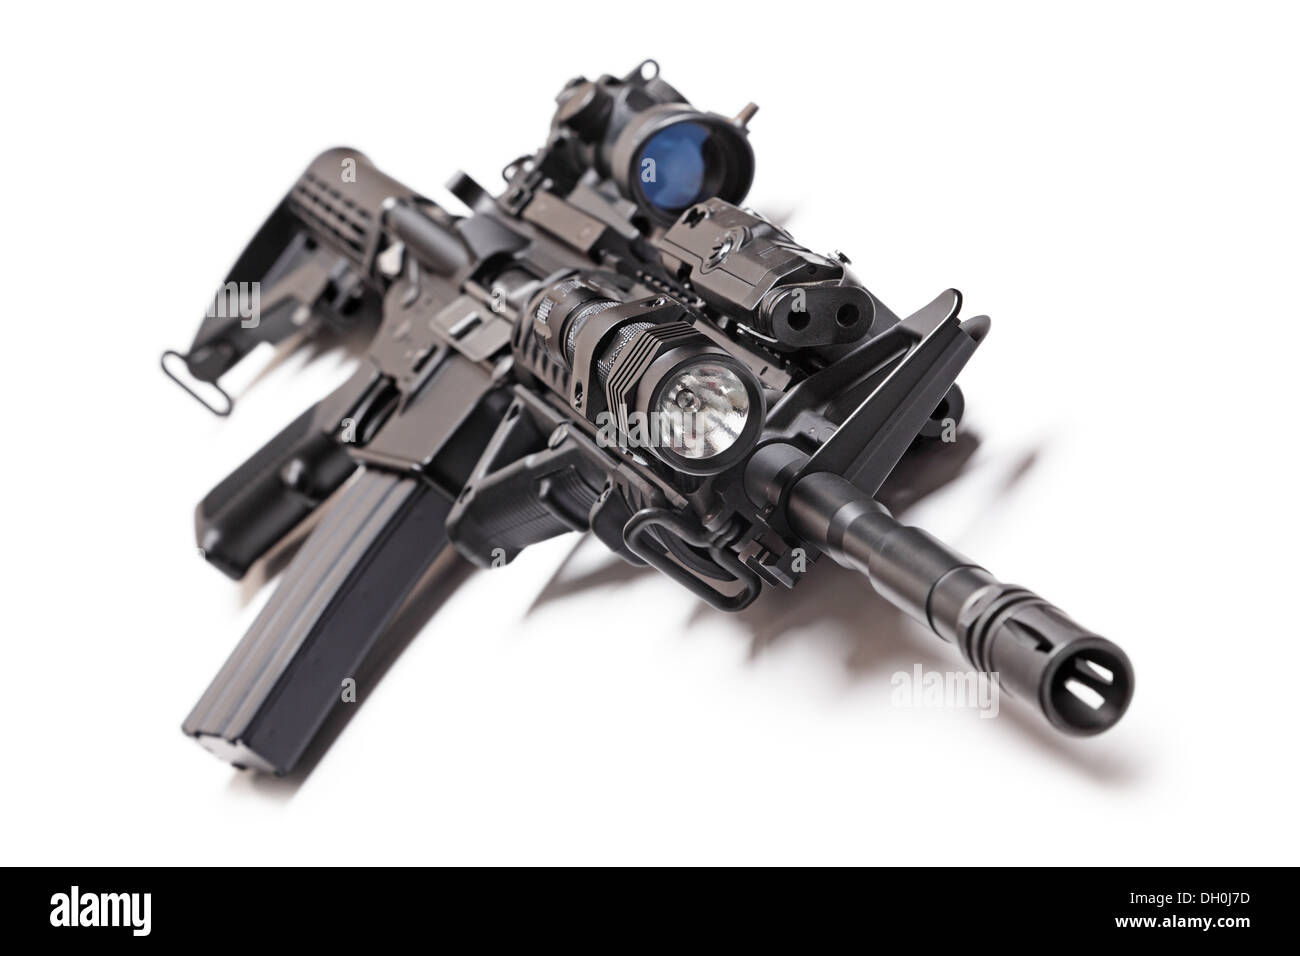 AR-15 (M4A1 Carbine tactiques) avec vue sniper, lampe, AFG grip et PEQ (pointeur/cible/illuminateur visant) Banque D'Images